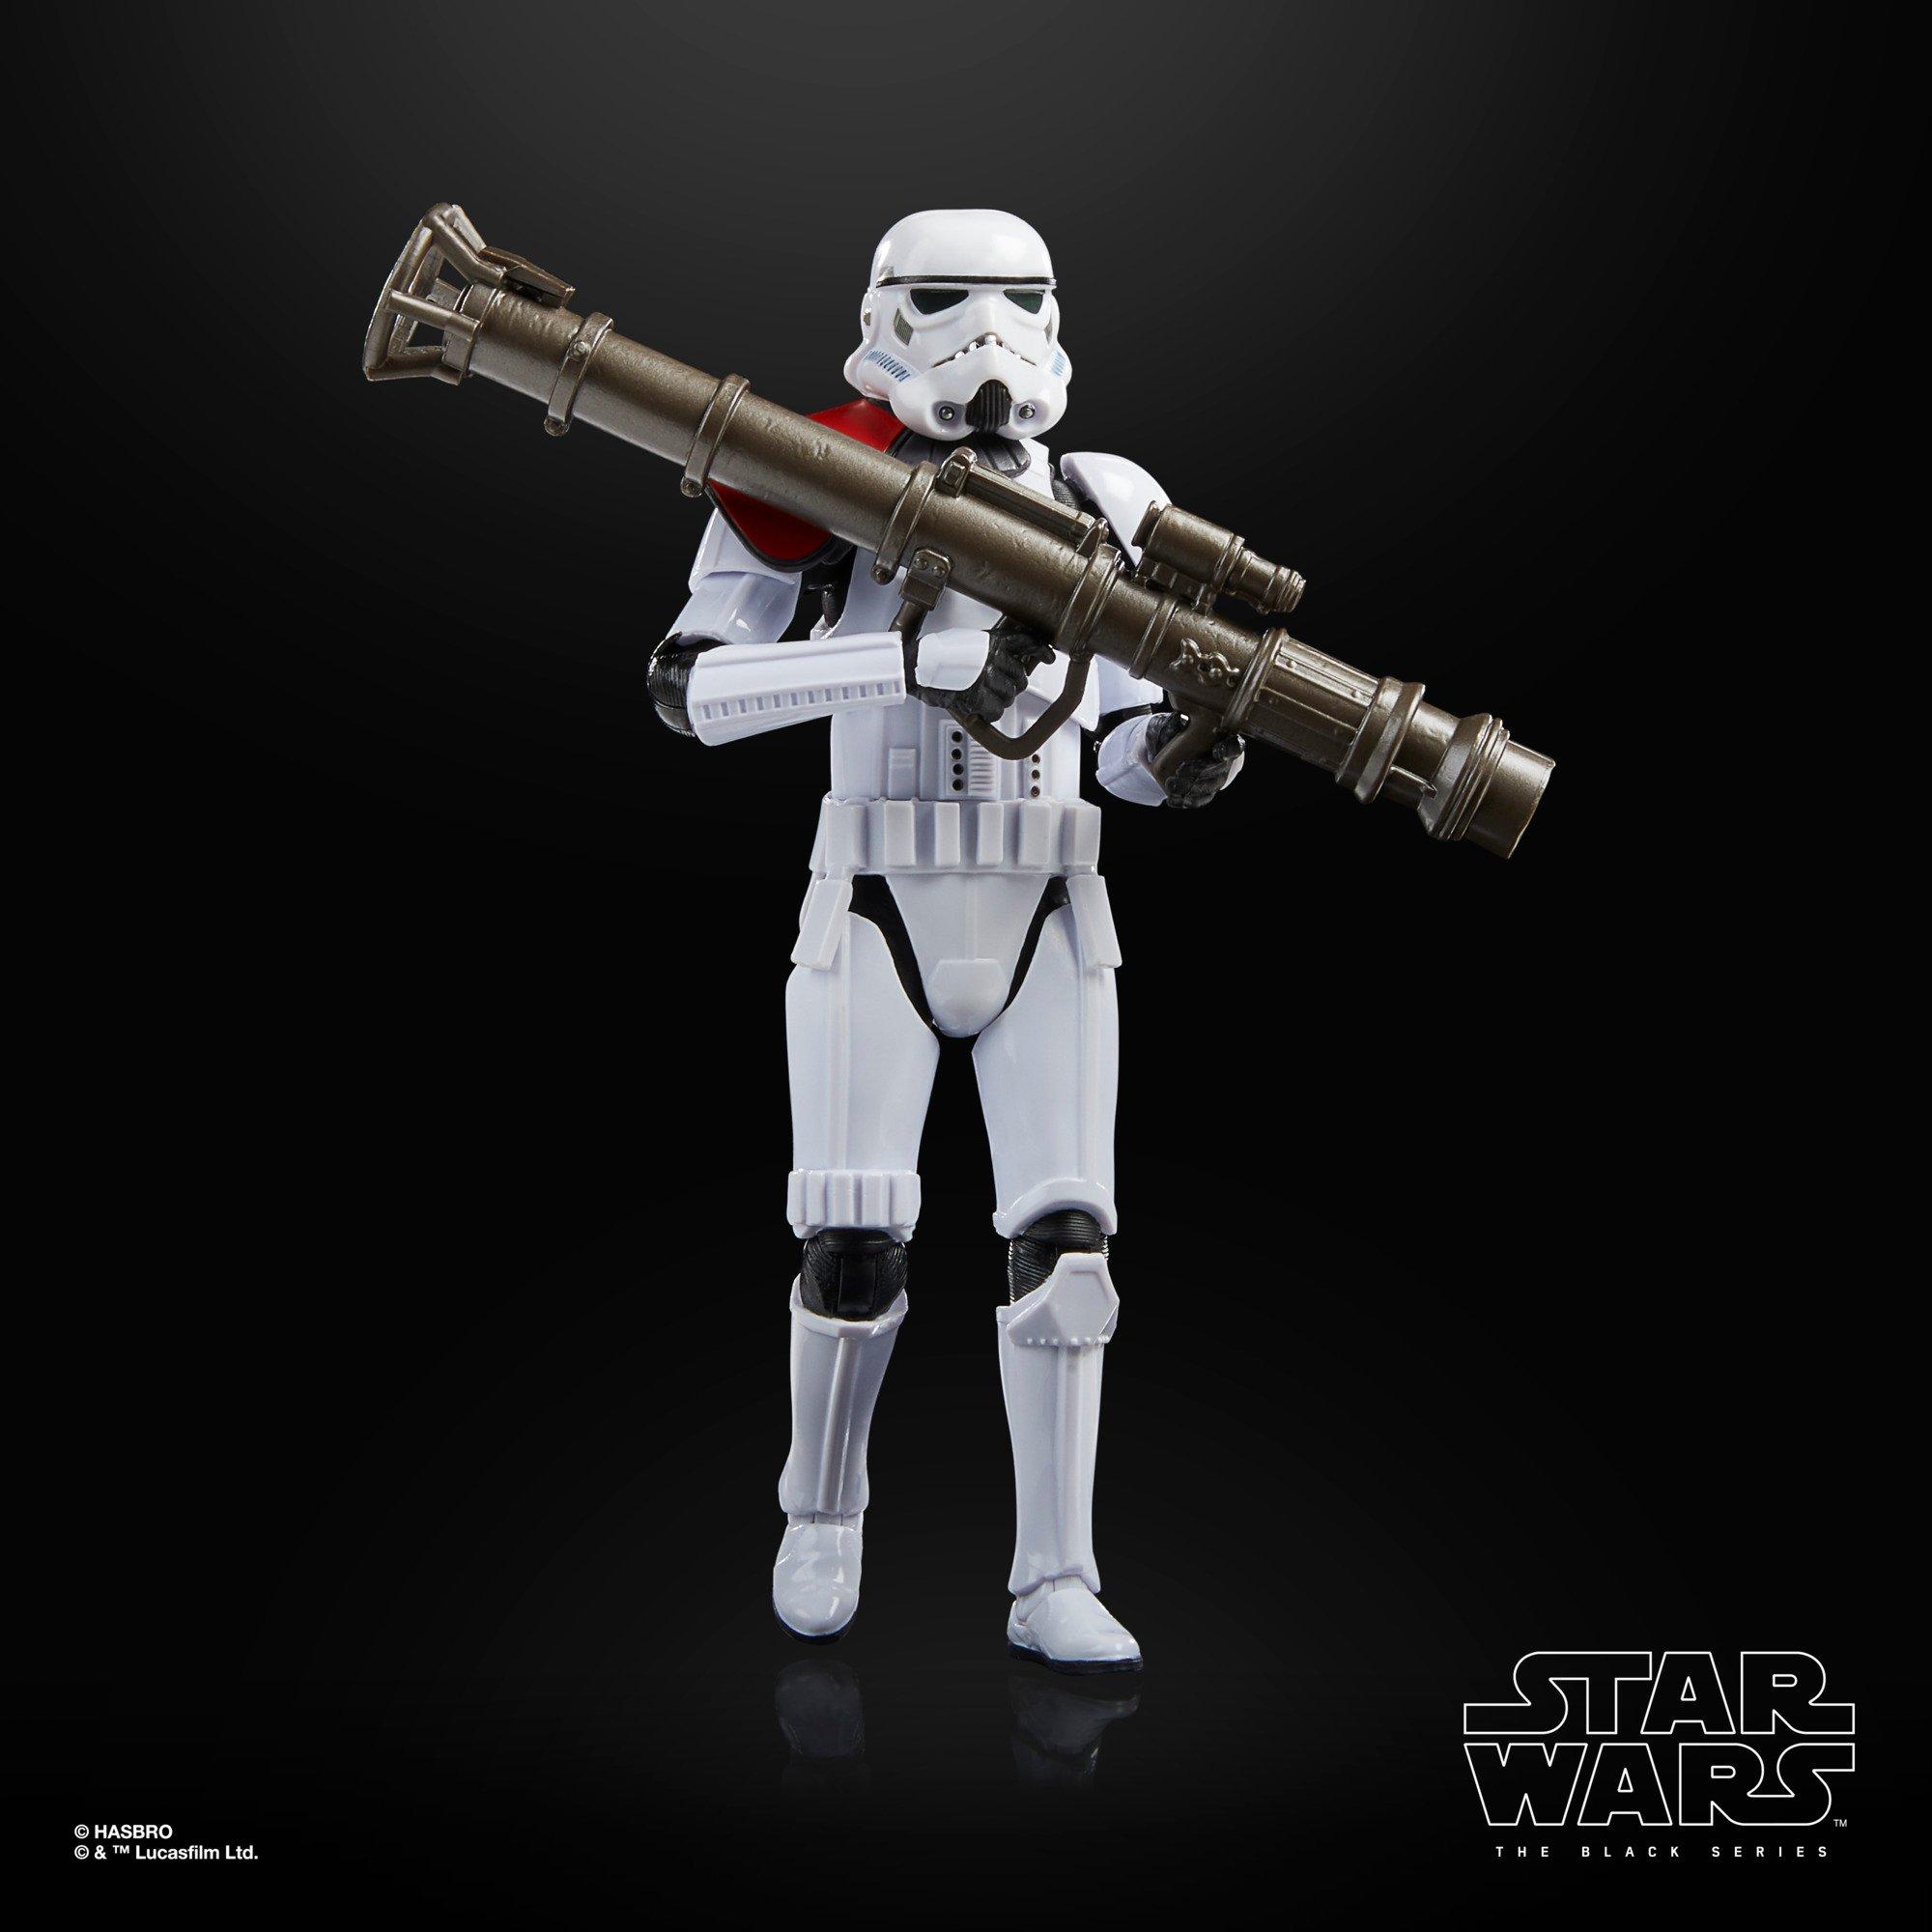 list item 4 of 10 Hasbro Star Wars The Black Series Star Wars Jedi: Fallen Order Rocket Launcher Trooper 6-in Action Figure GameStop Exclusive